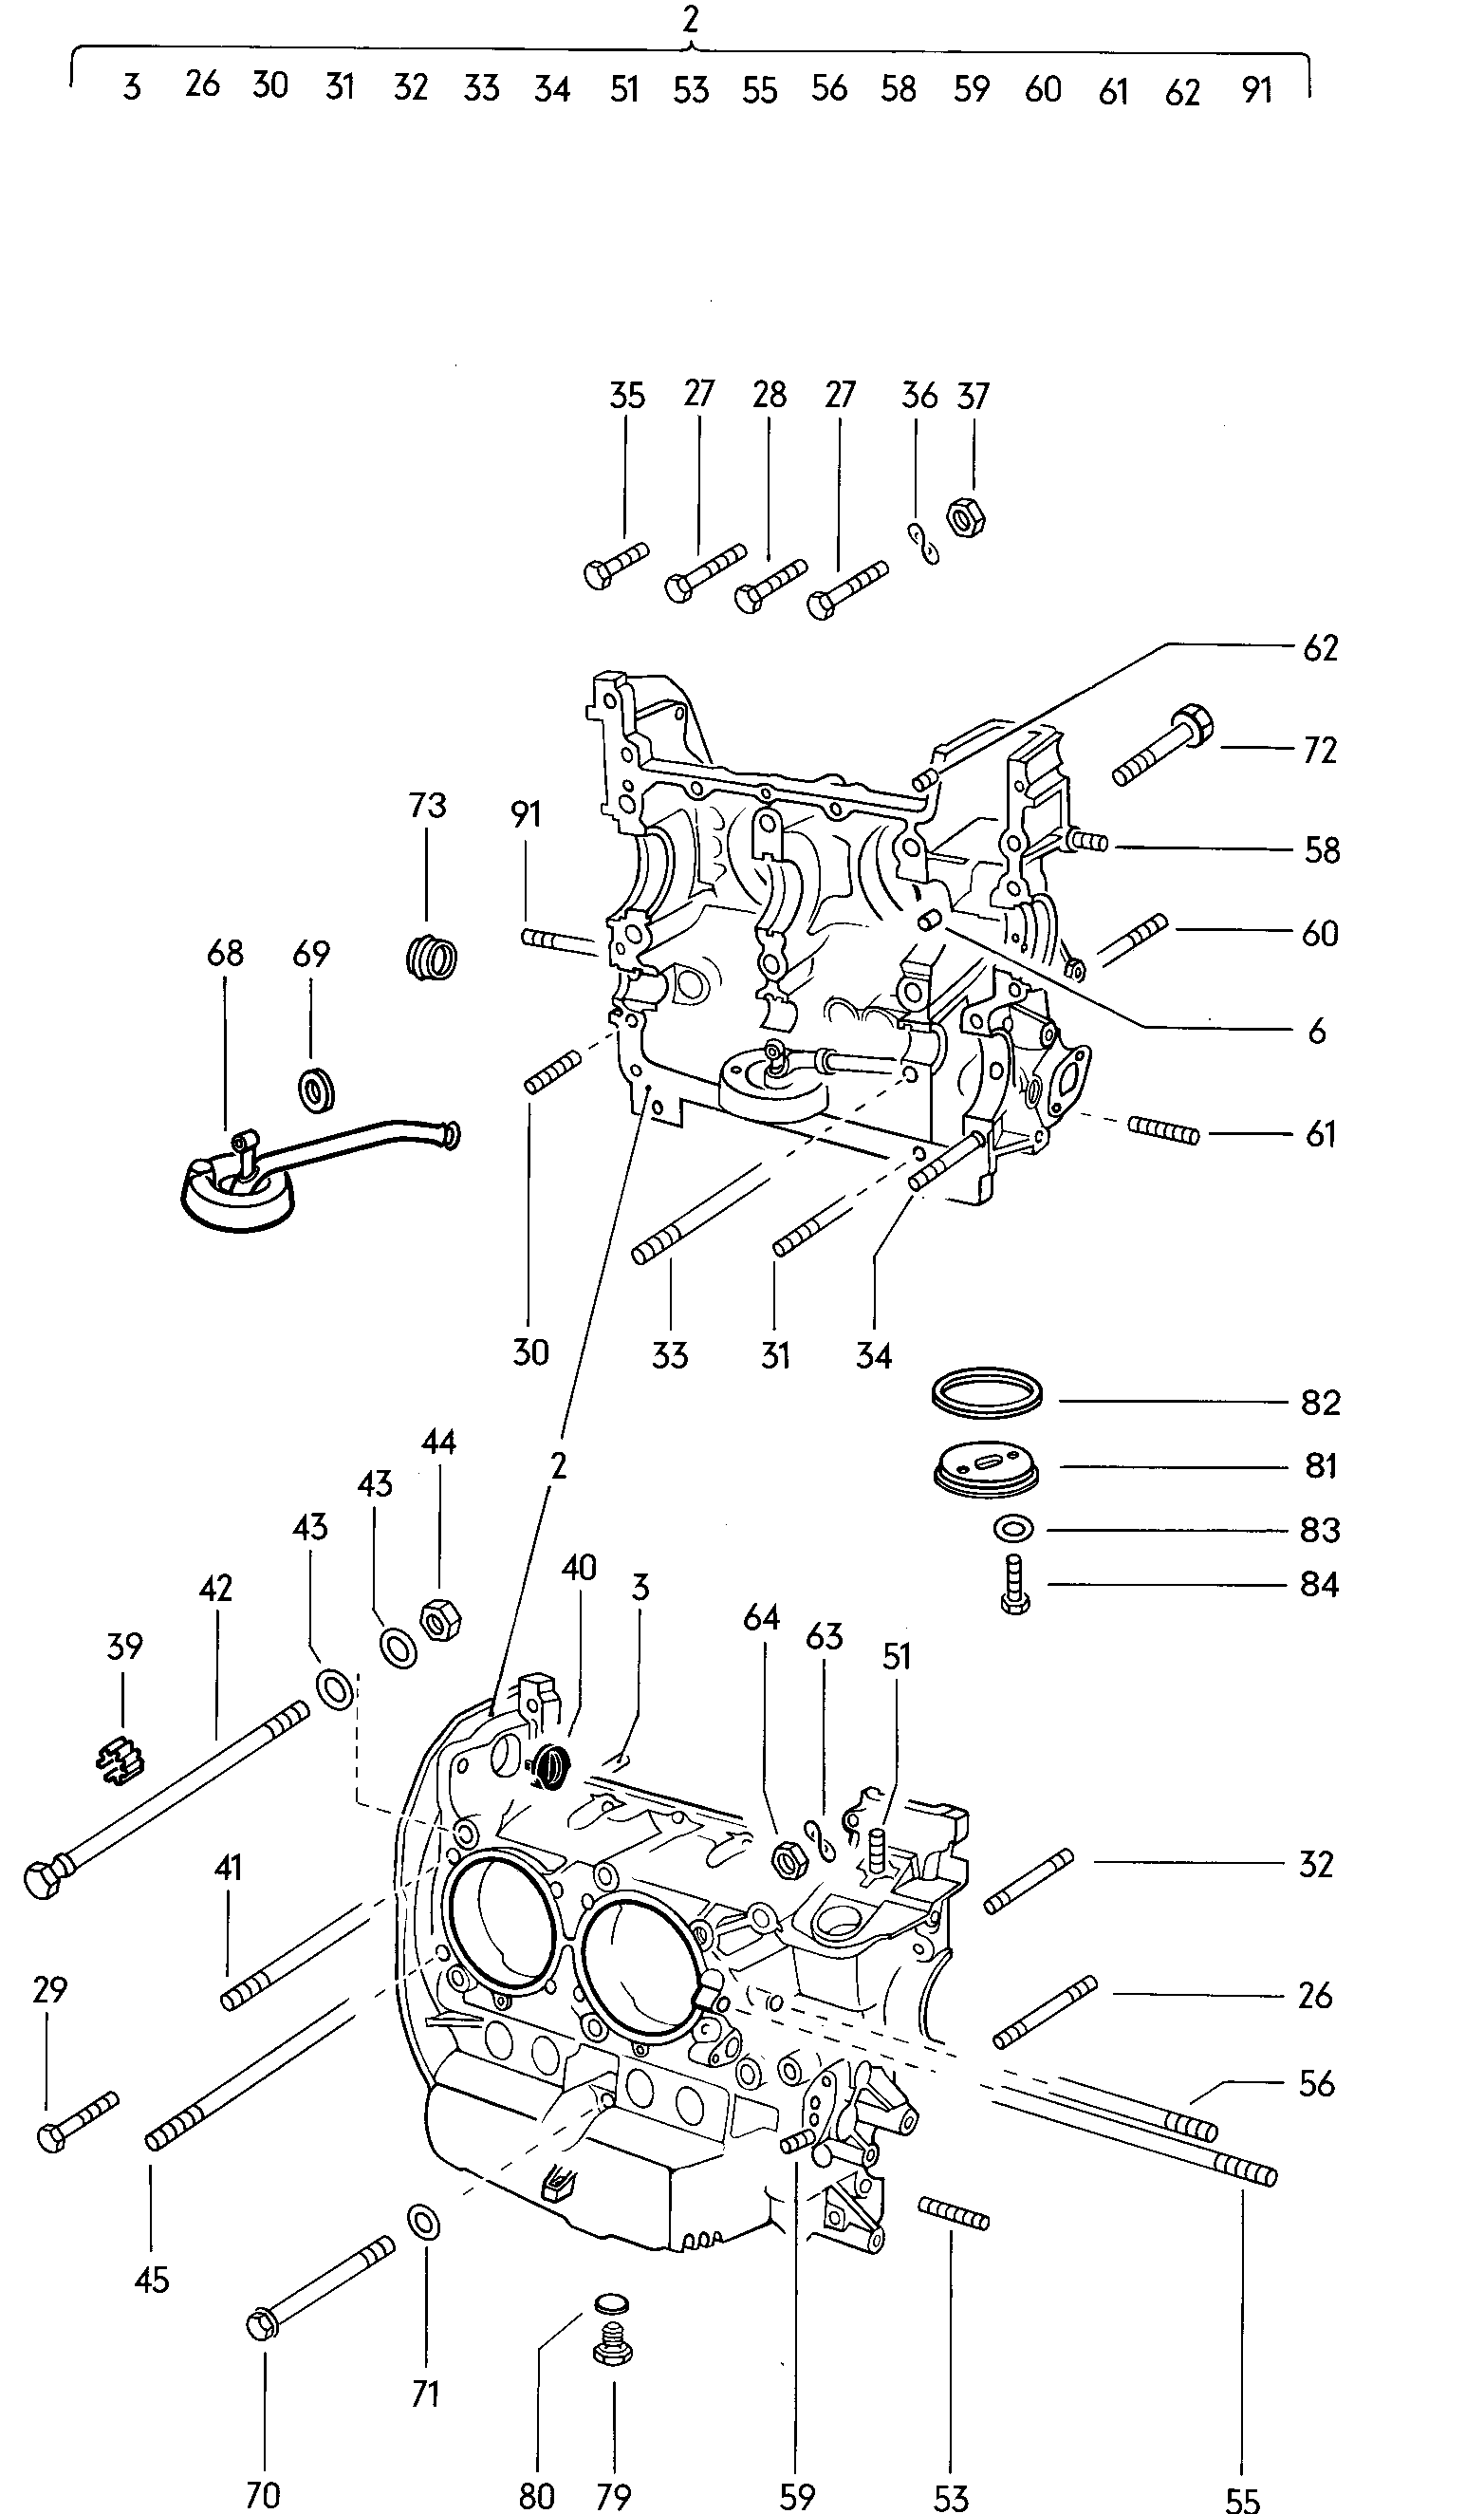 elementy mocujace silnik<br>i skrzynie biegow  - Typ 2/syncro - t2